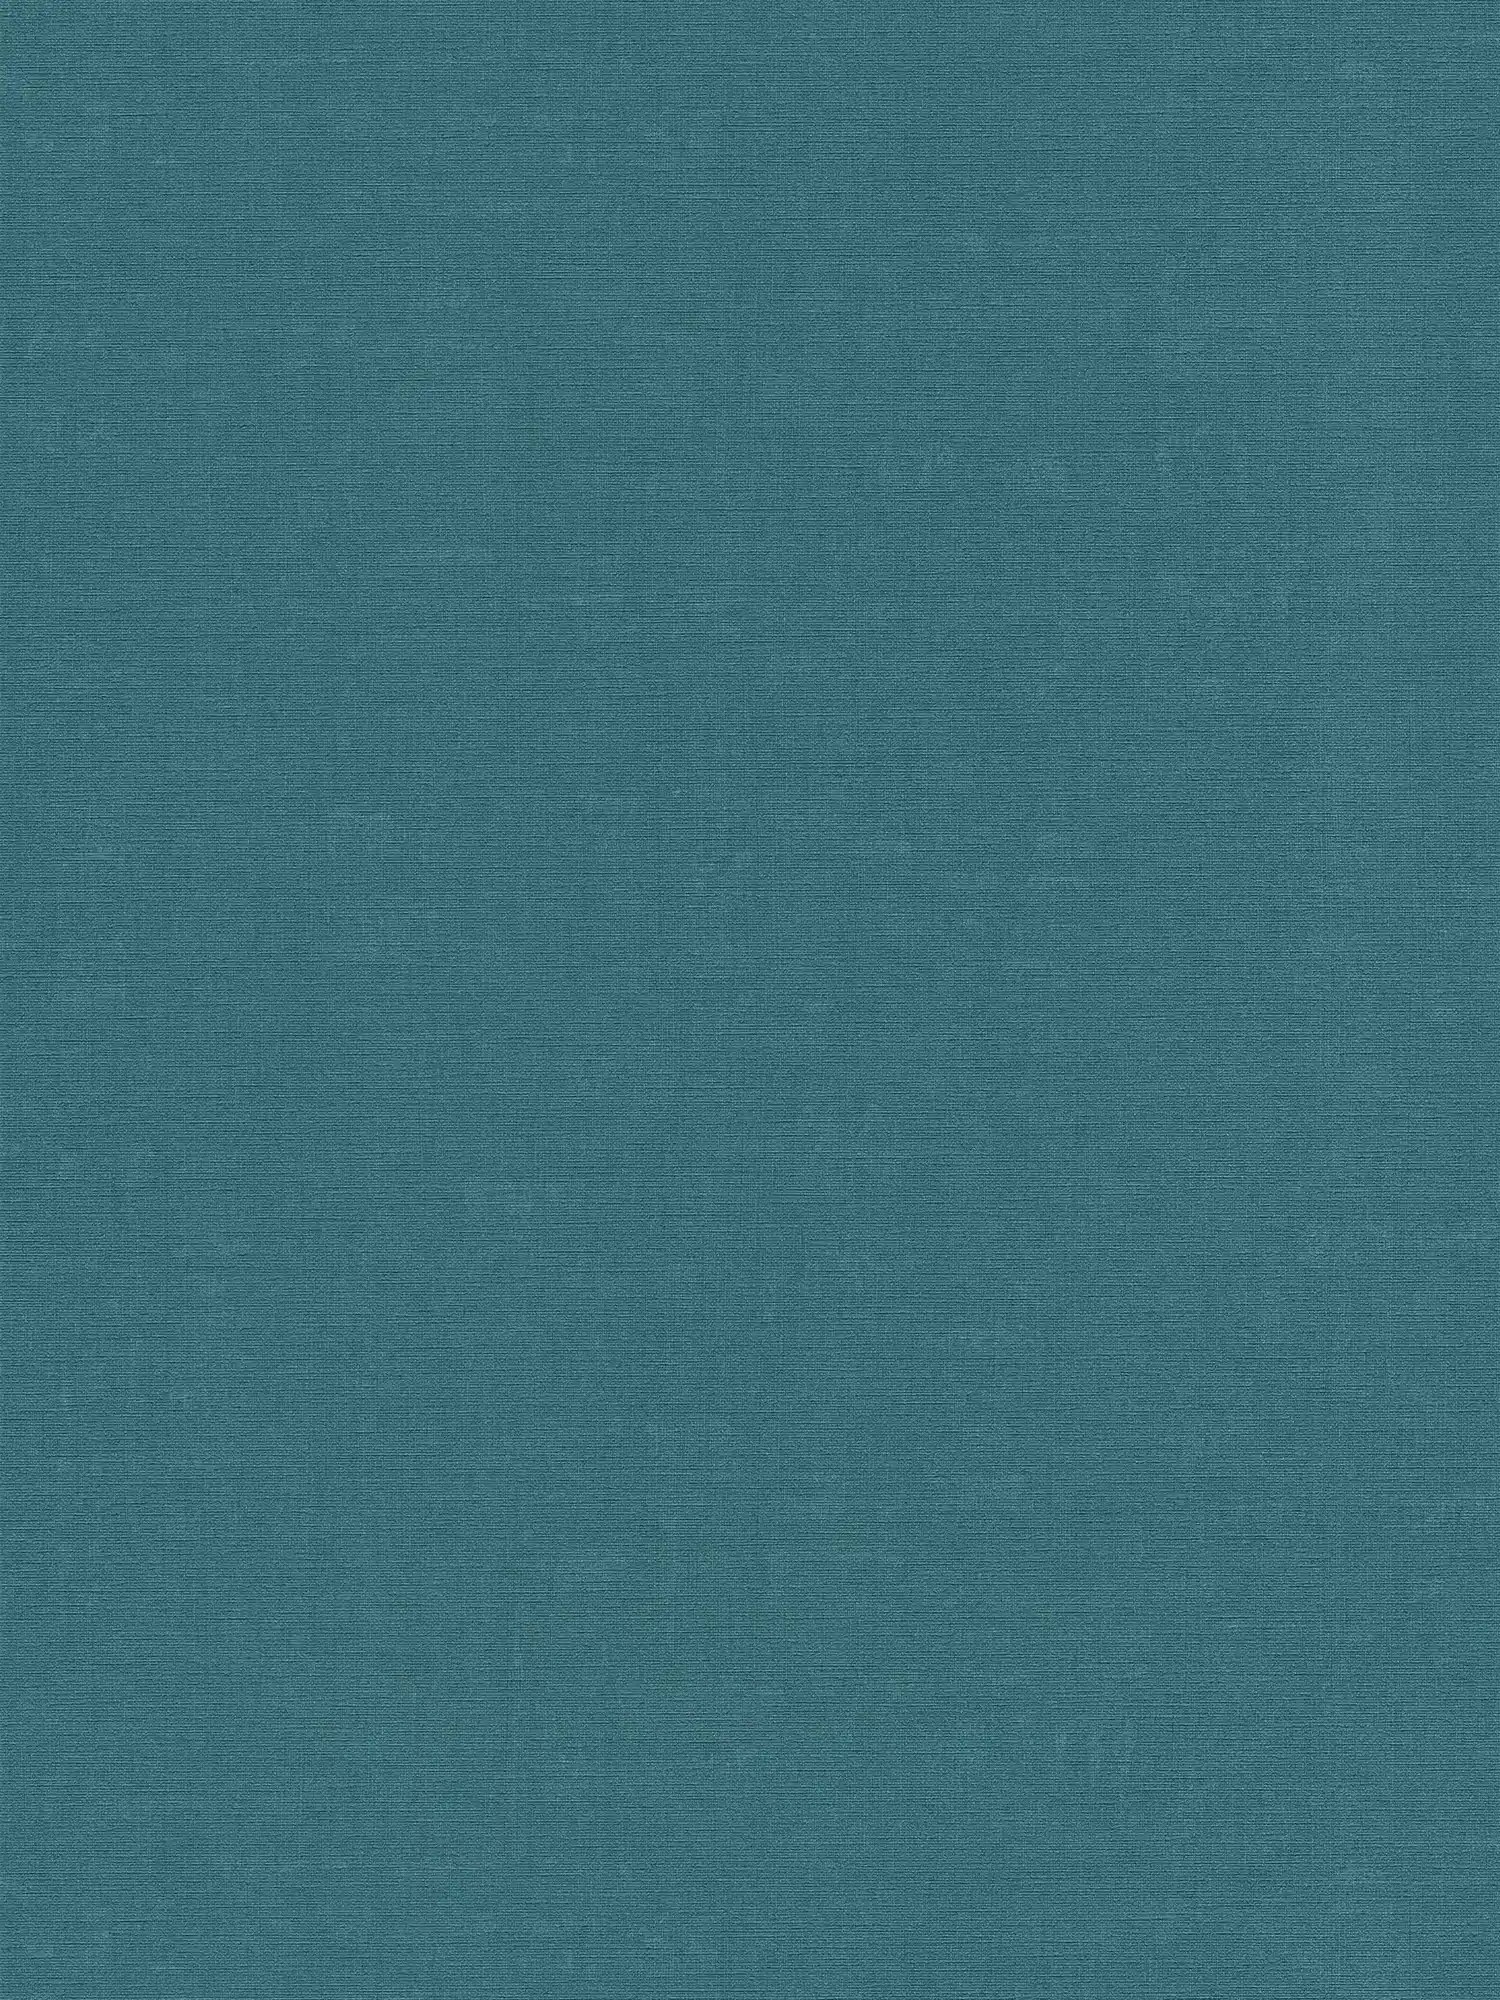 Vliesbehang effen met gevlekt effect - blauw, groen
